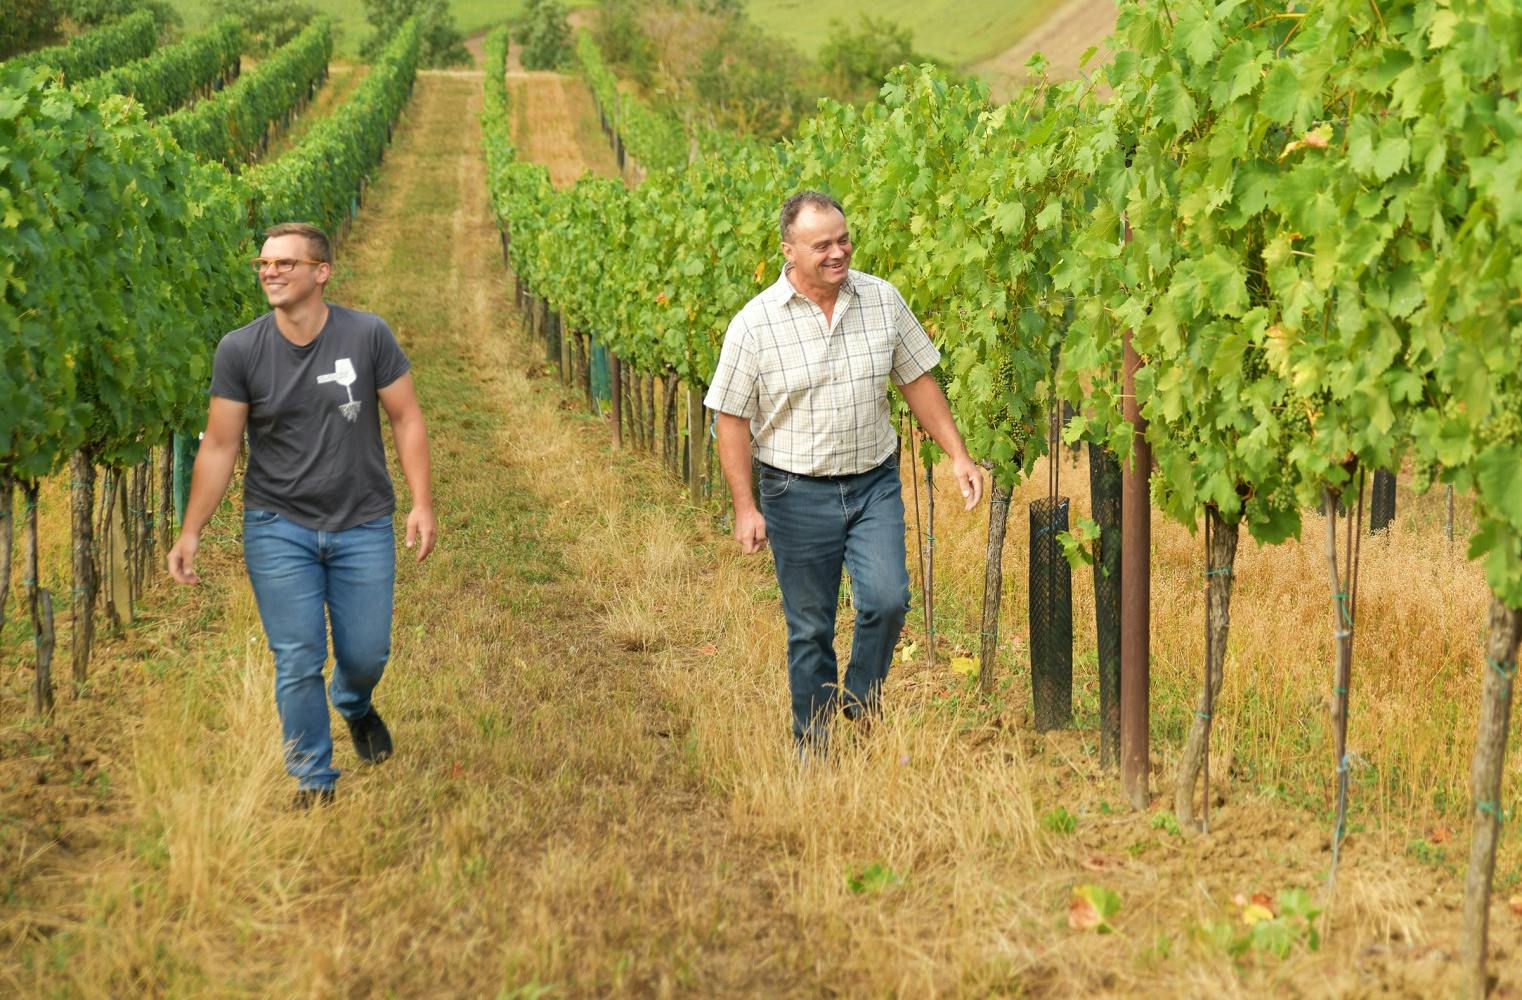 Weg zum Pfalz-Wein | Tour durch Weingärten mit Verkostung